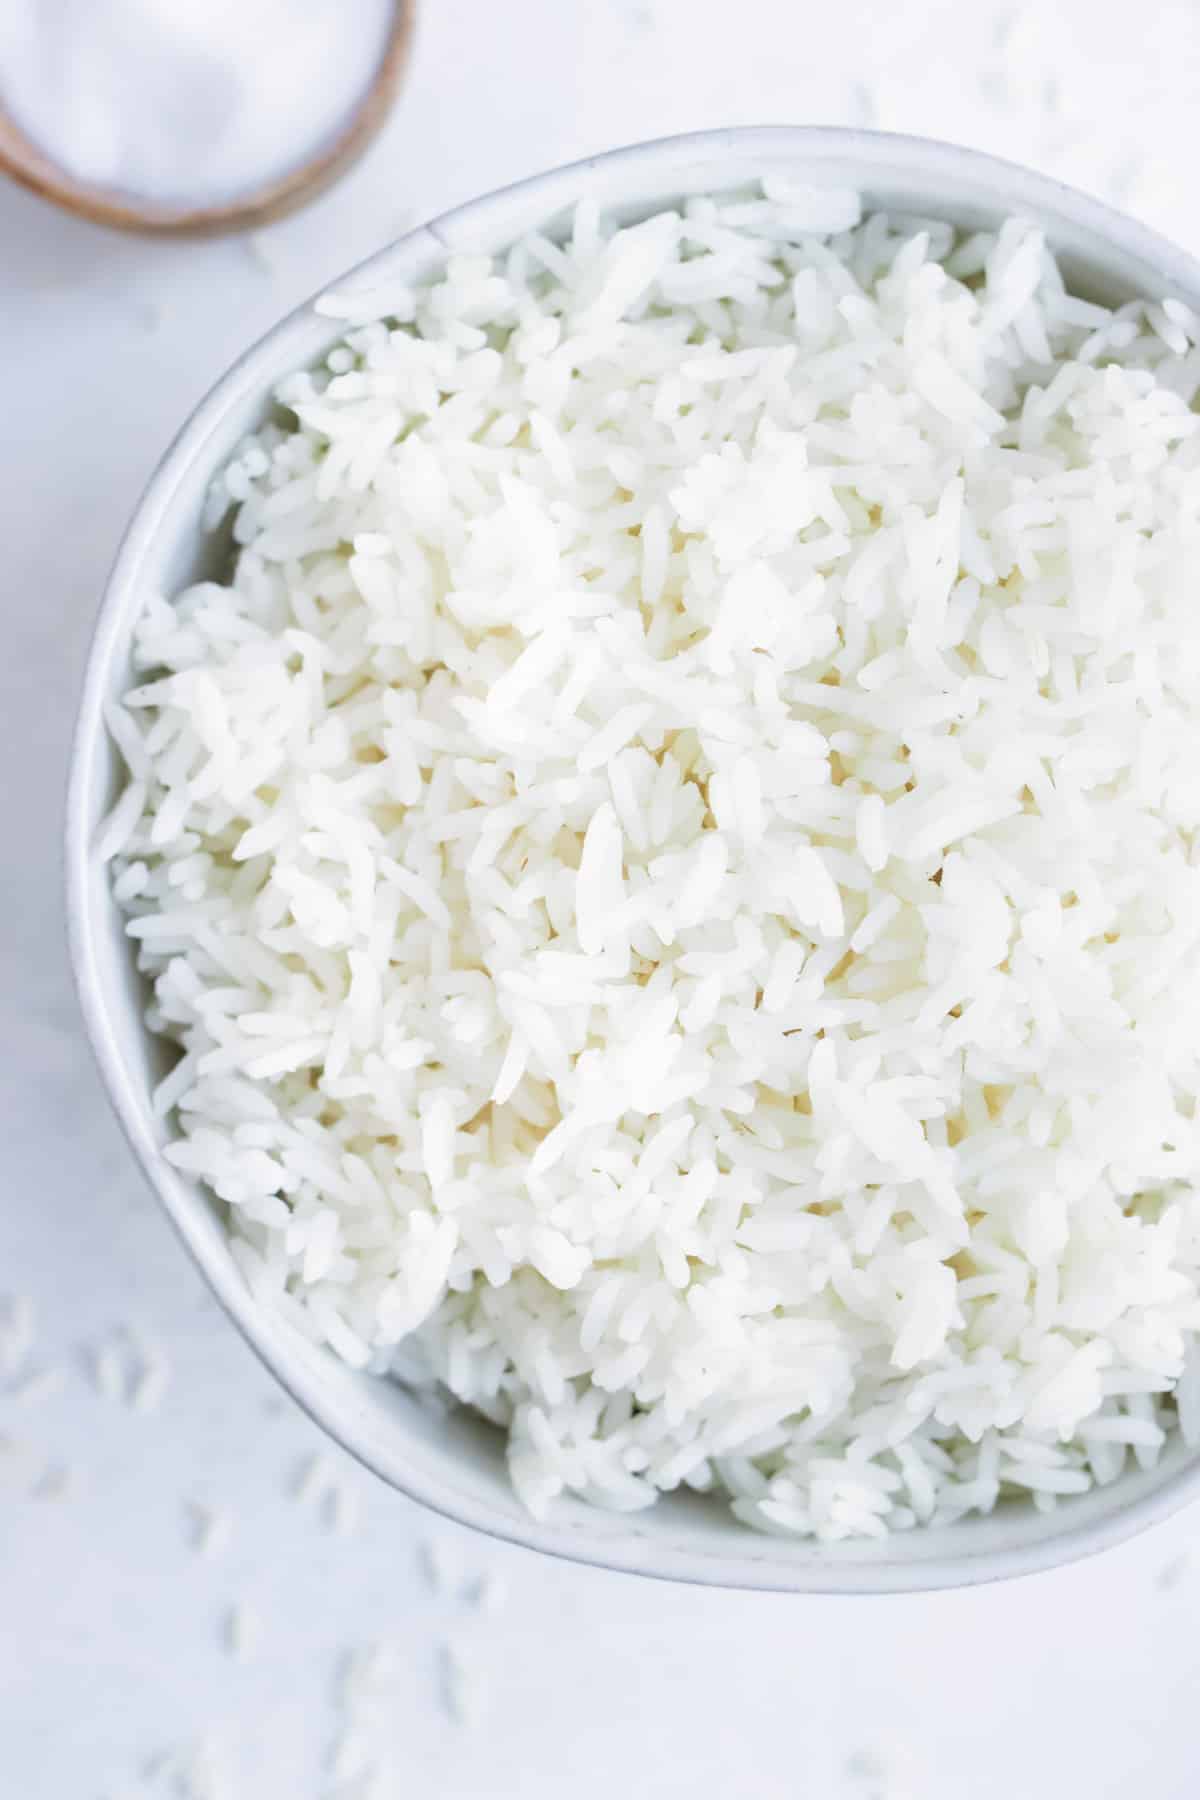 Serve instant pot white rice for dinner.